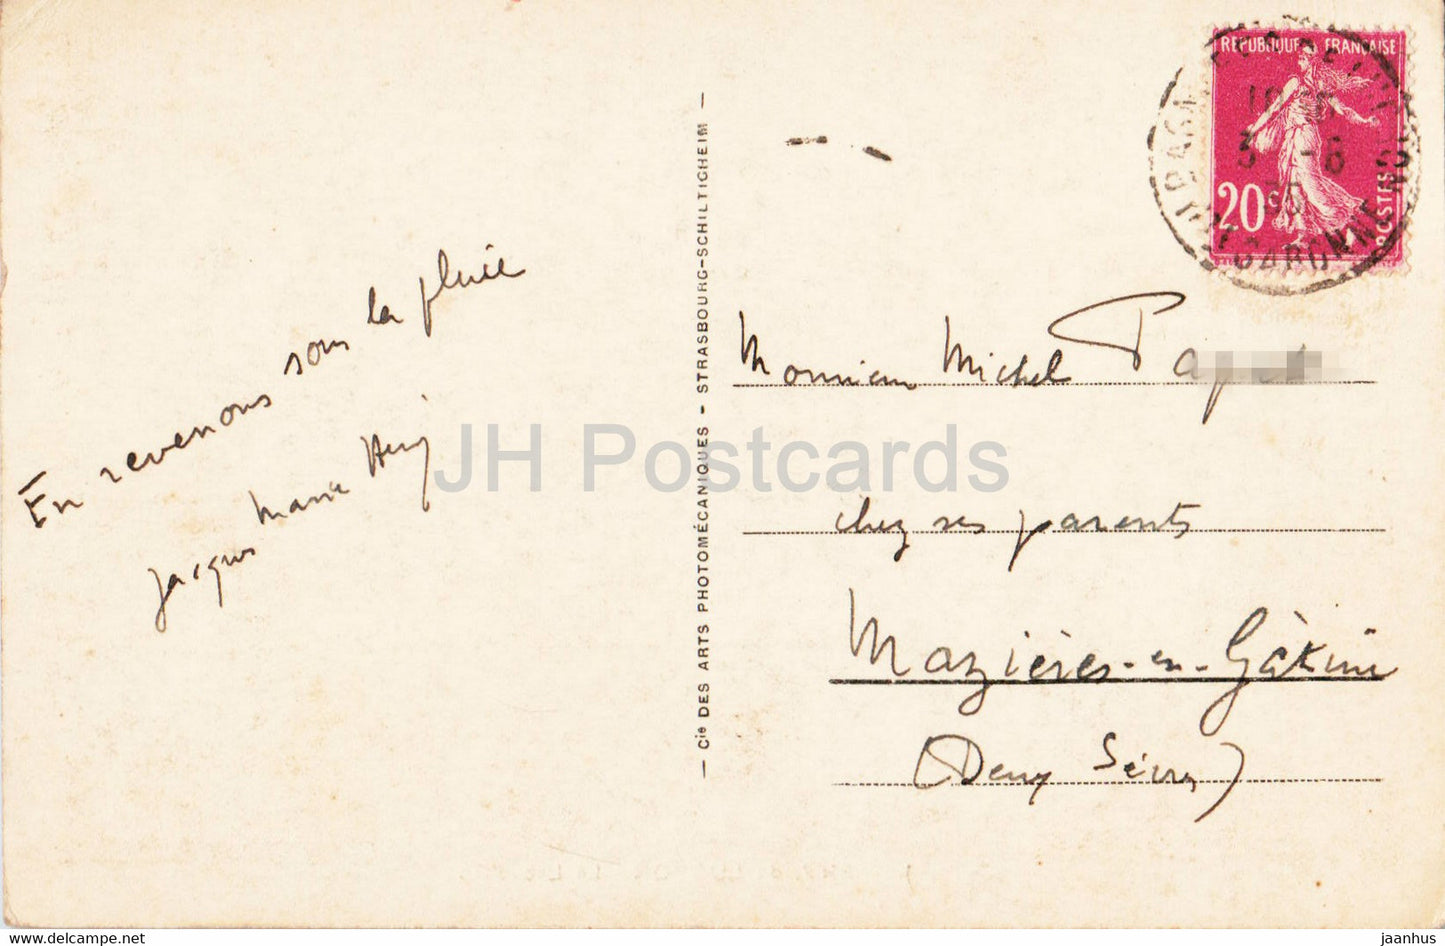 Env de Luchon - Le Lac d'Oo - 108 - old postcard - 1935 - France - used